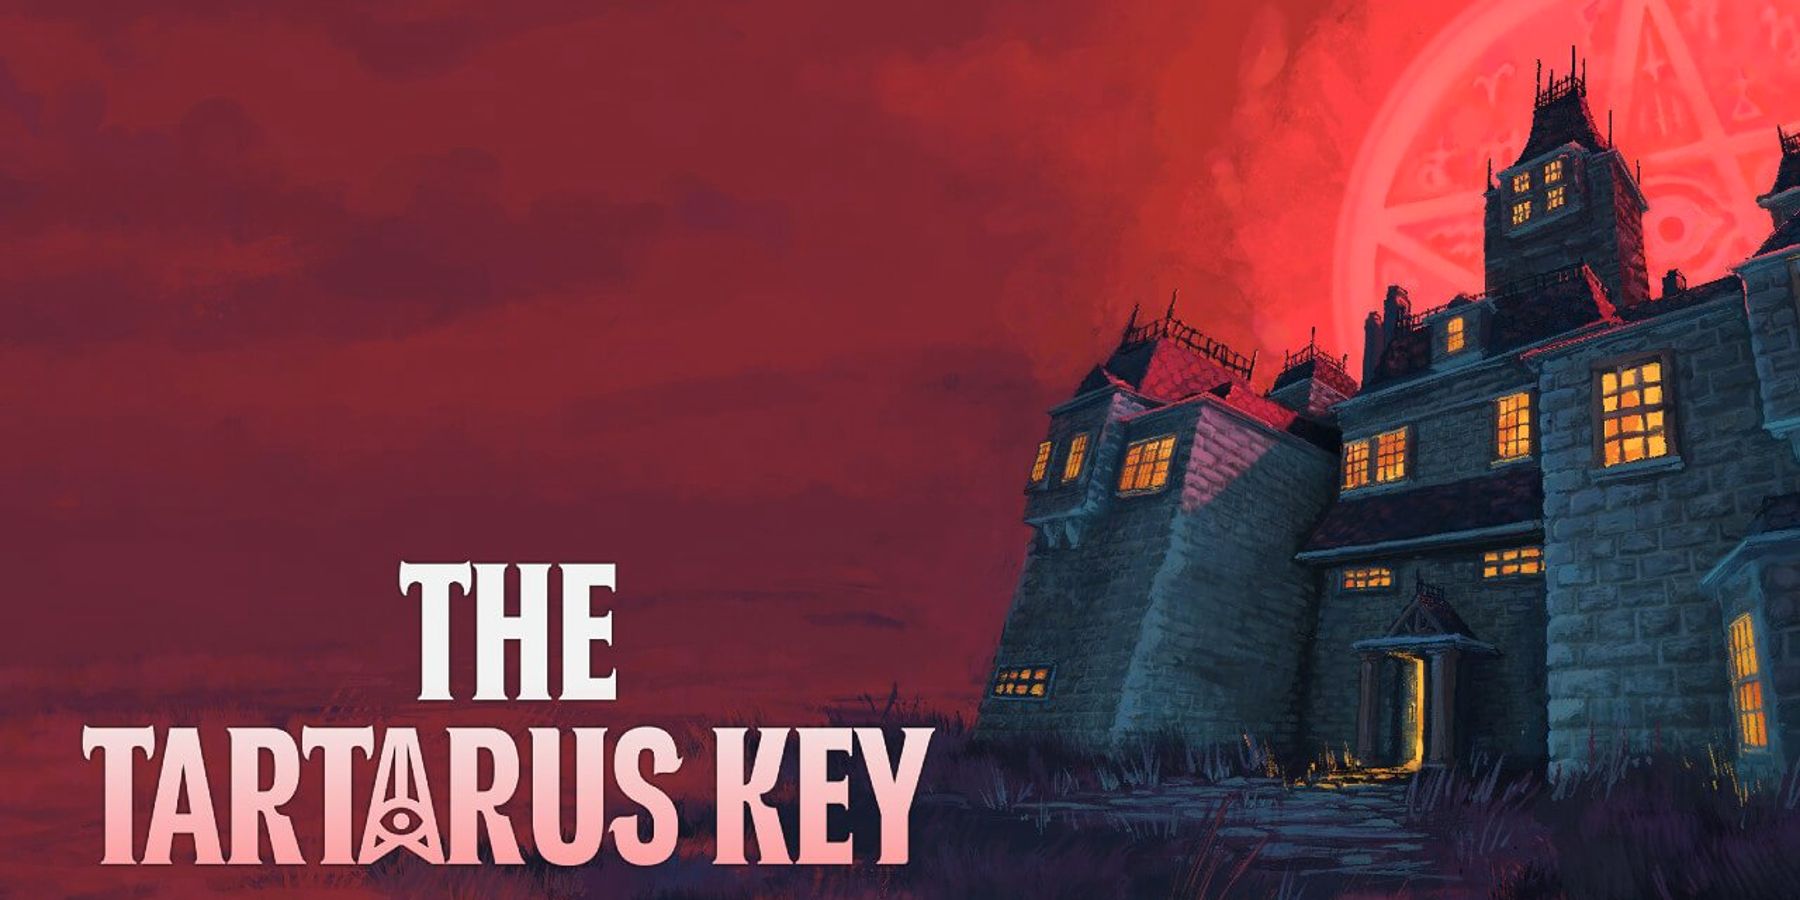 PS1 Style Horror Game The Tartarus Key Nintendo Switch İçin Açıklandı